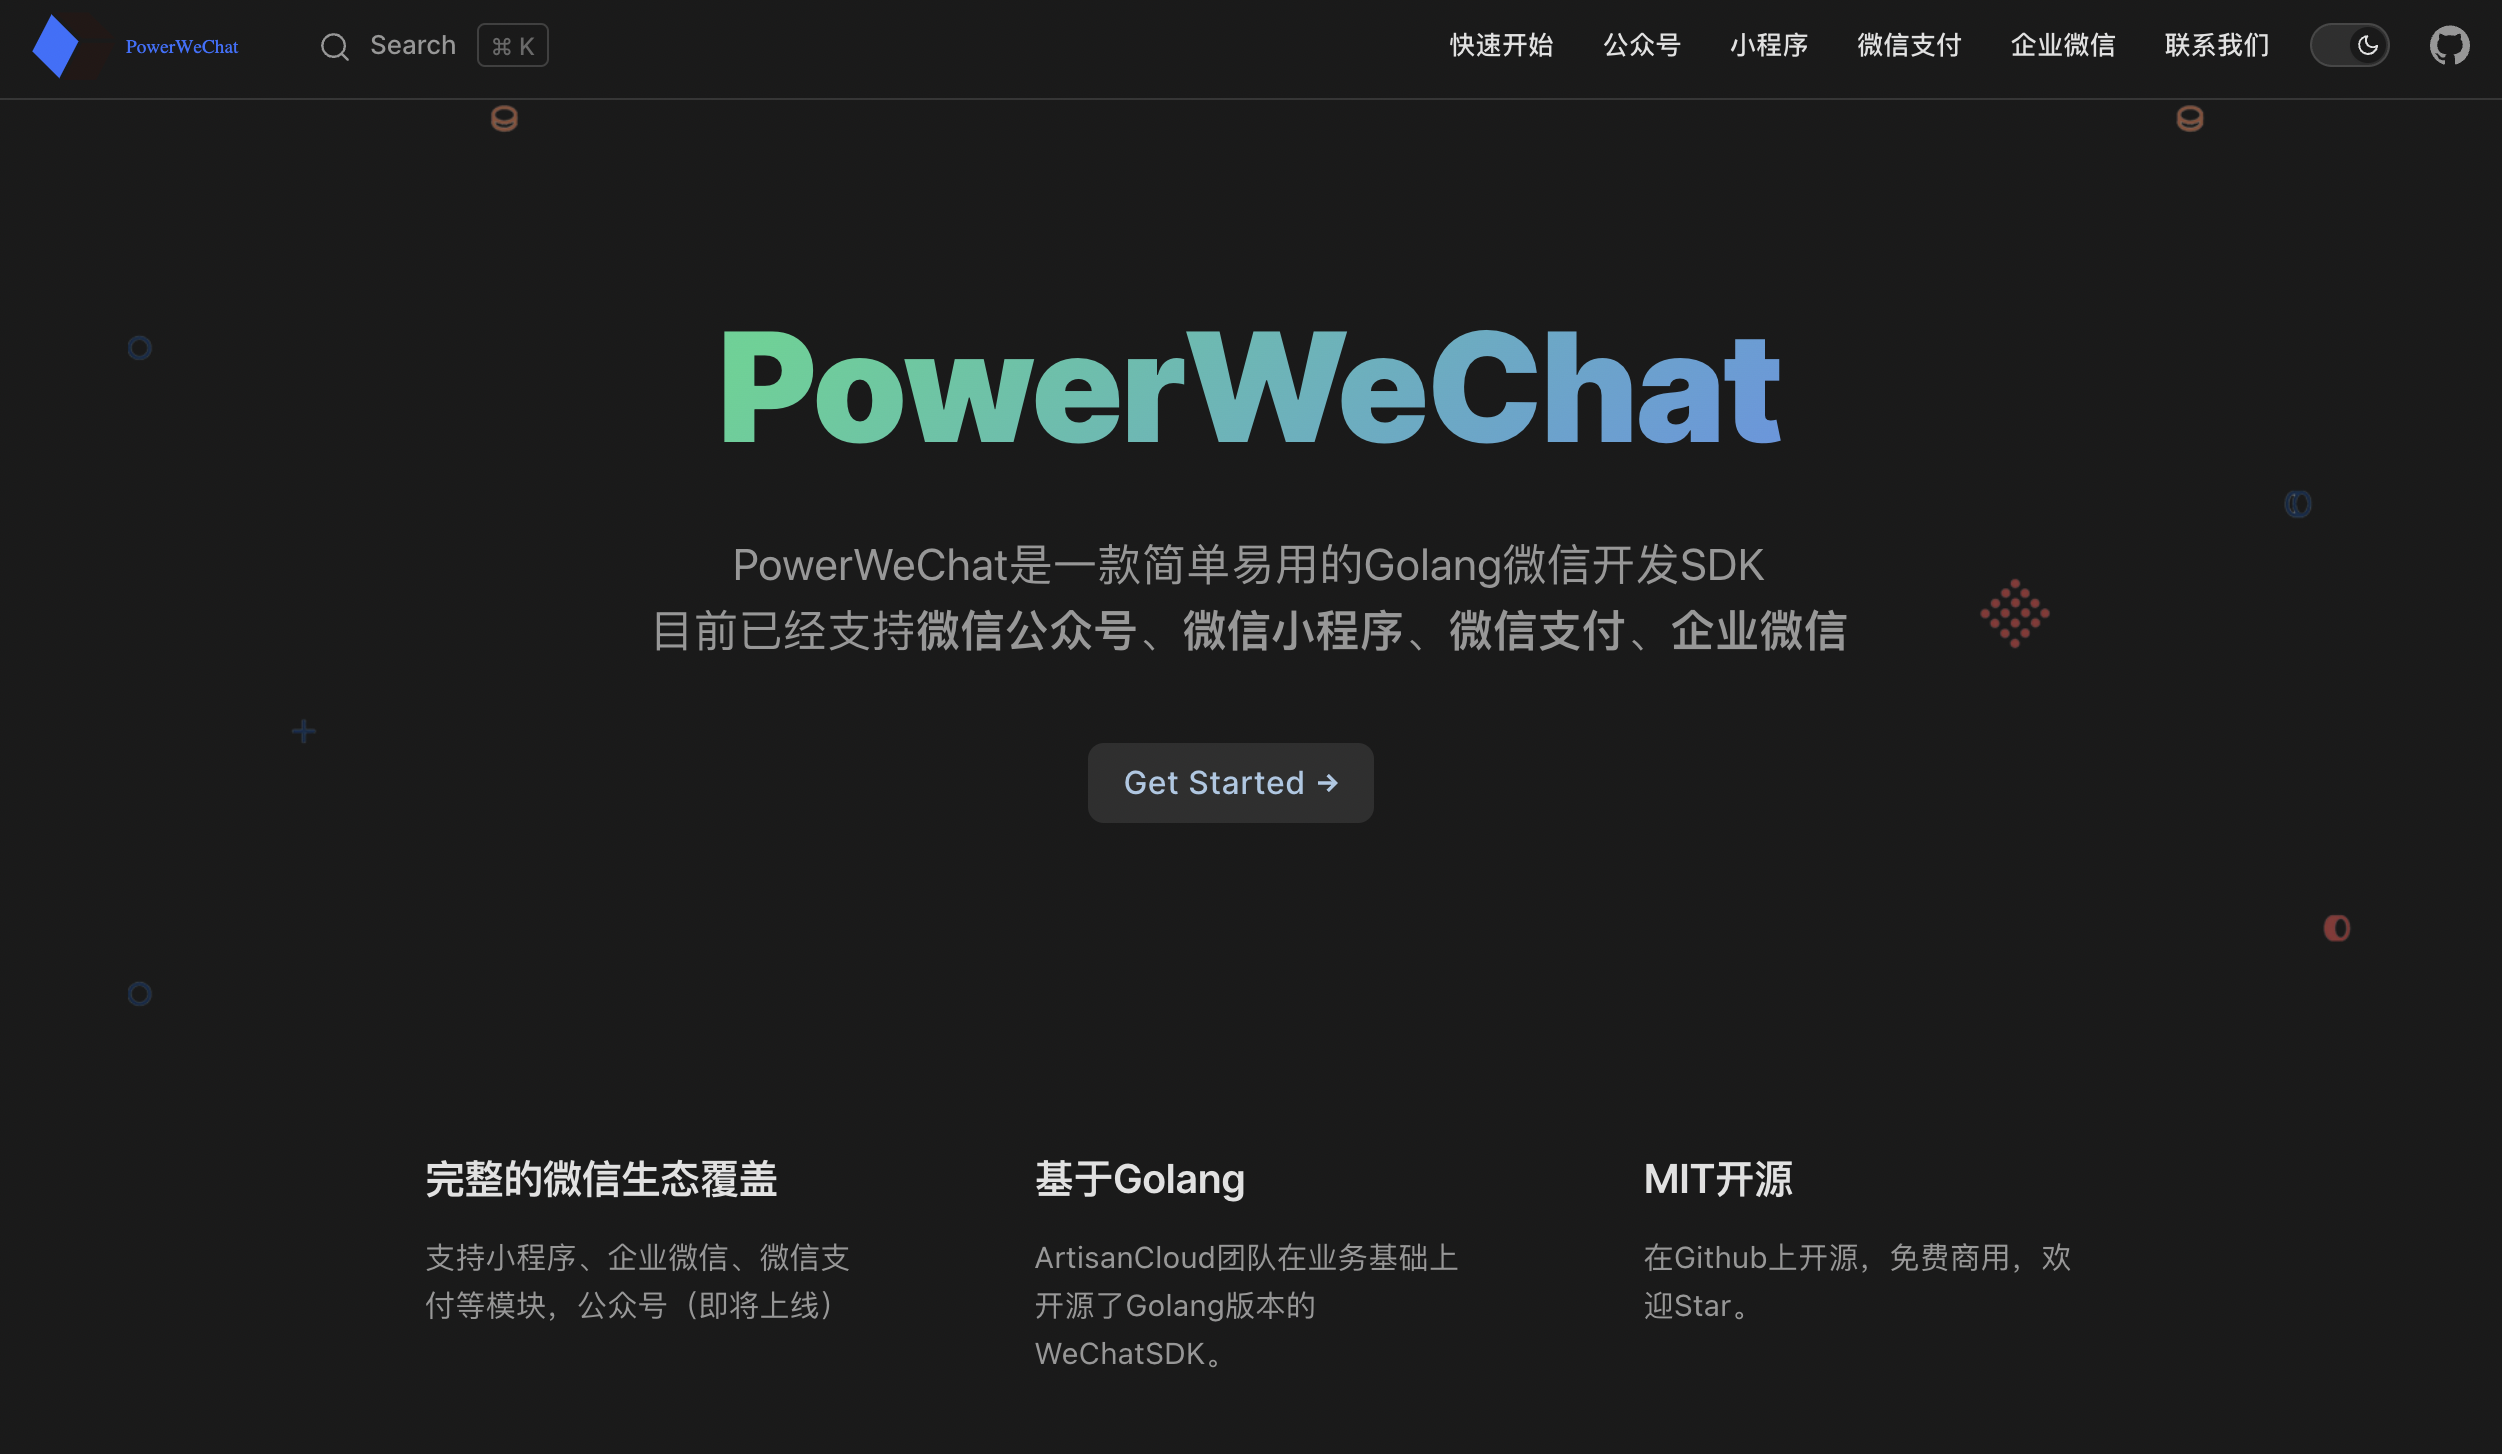 PowerWeChat